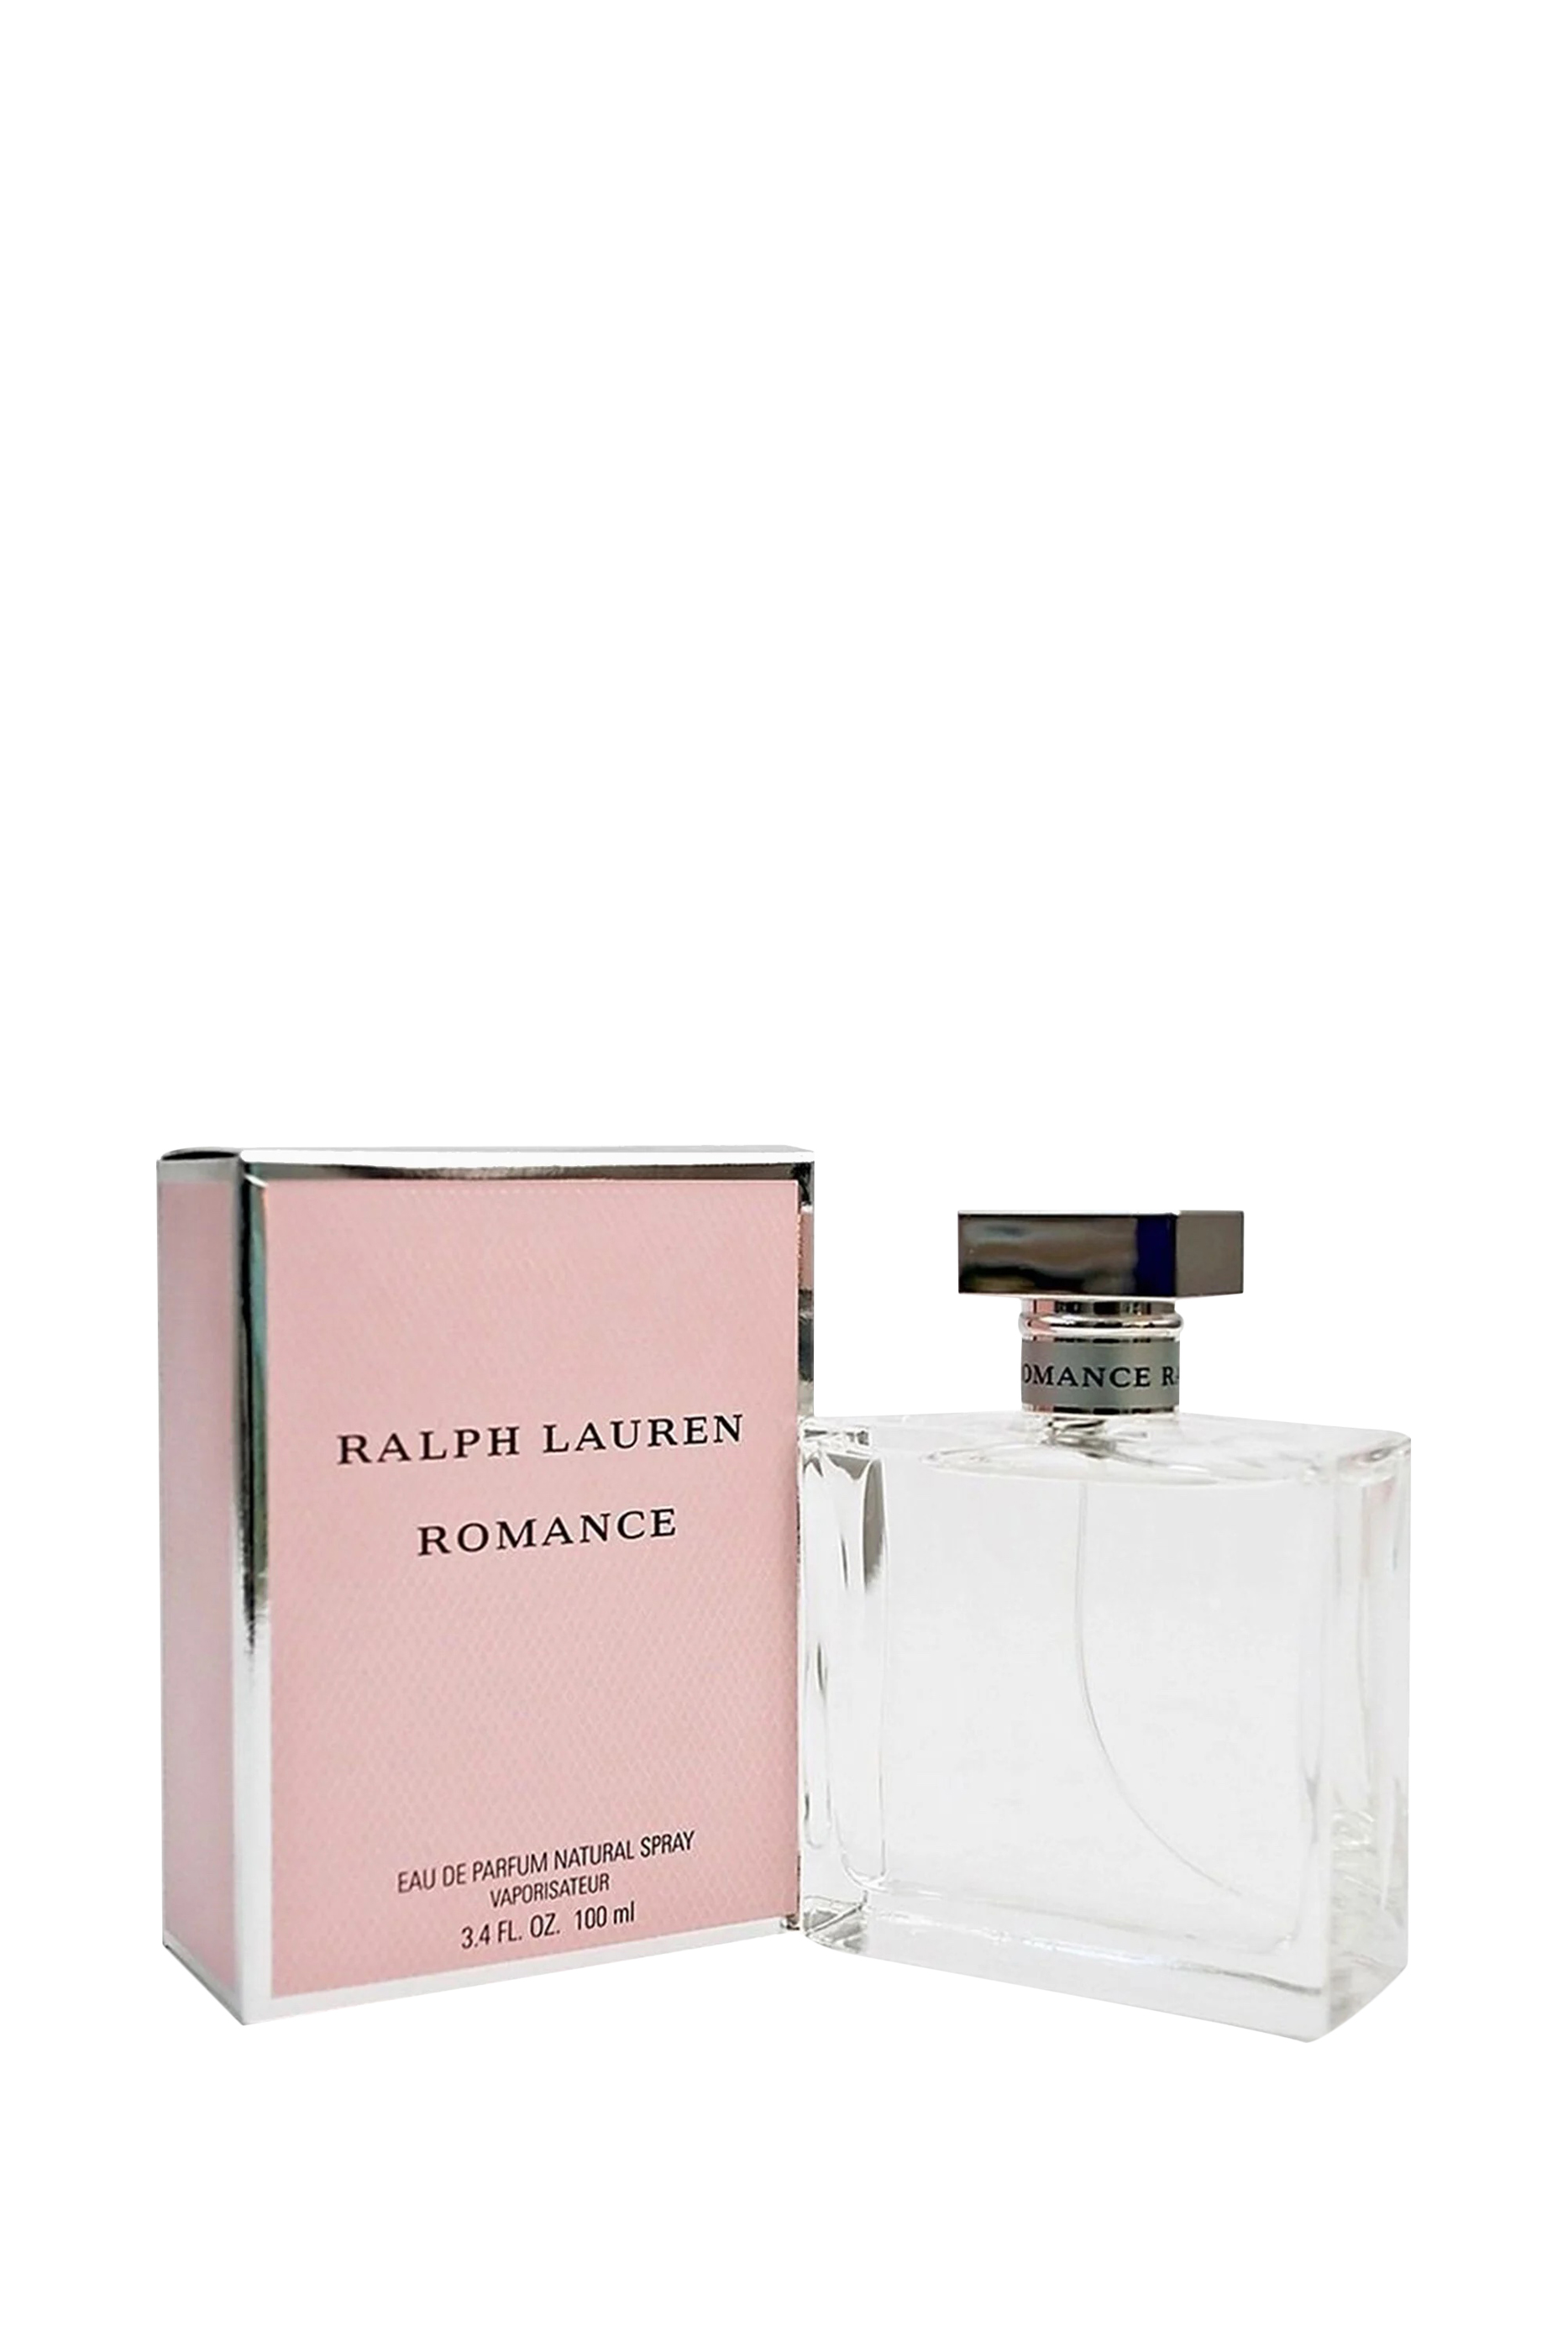 Buy Ralph Lauren Romance Eau de Parfum